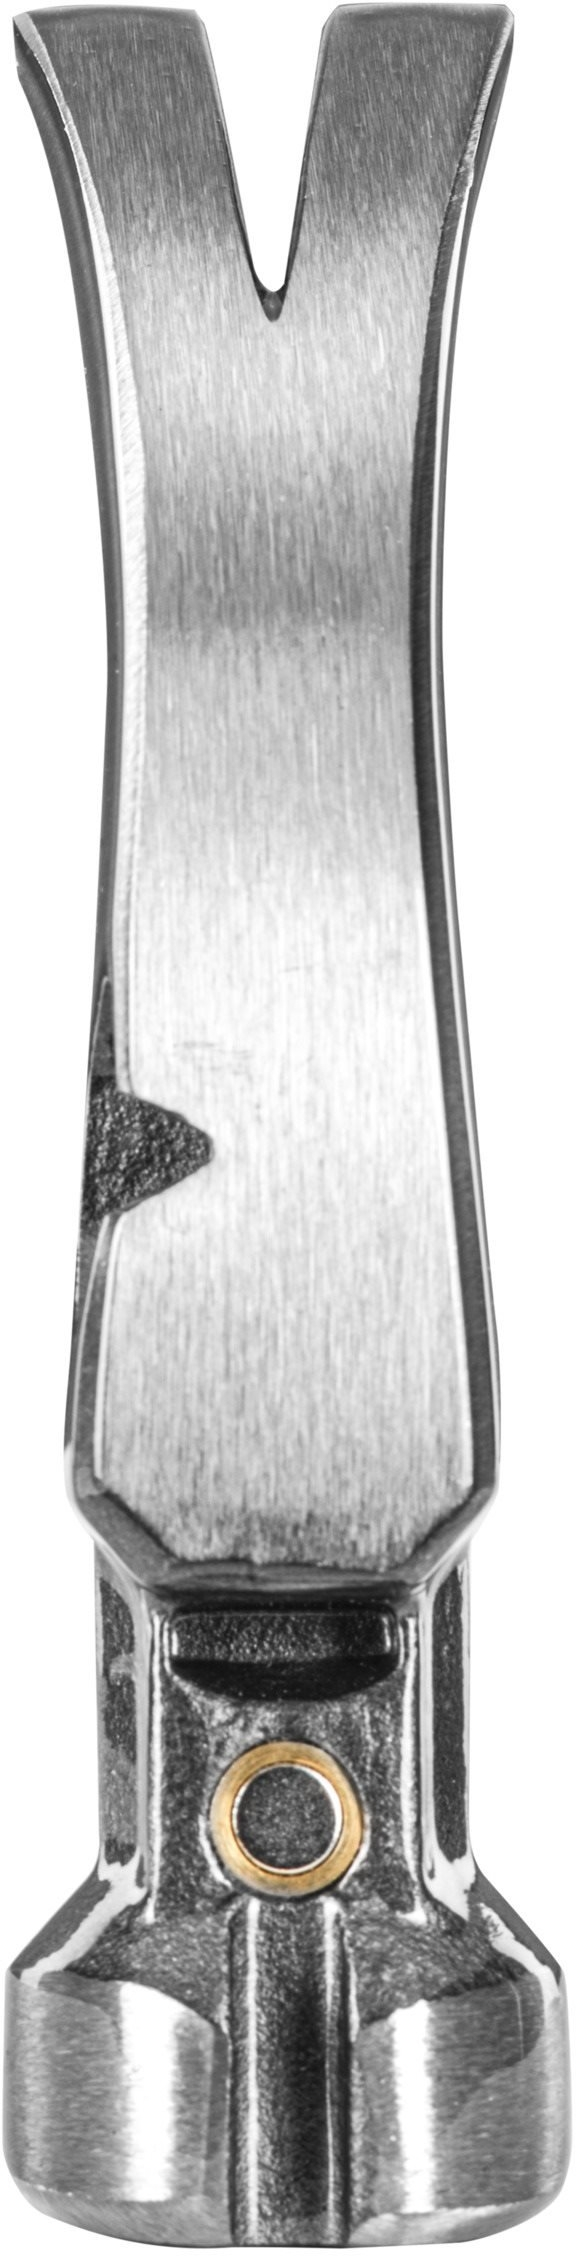 Молоток столярний Ryobi RHHSCC450, 450г (5132006035)фото5